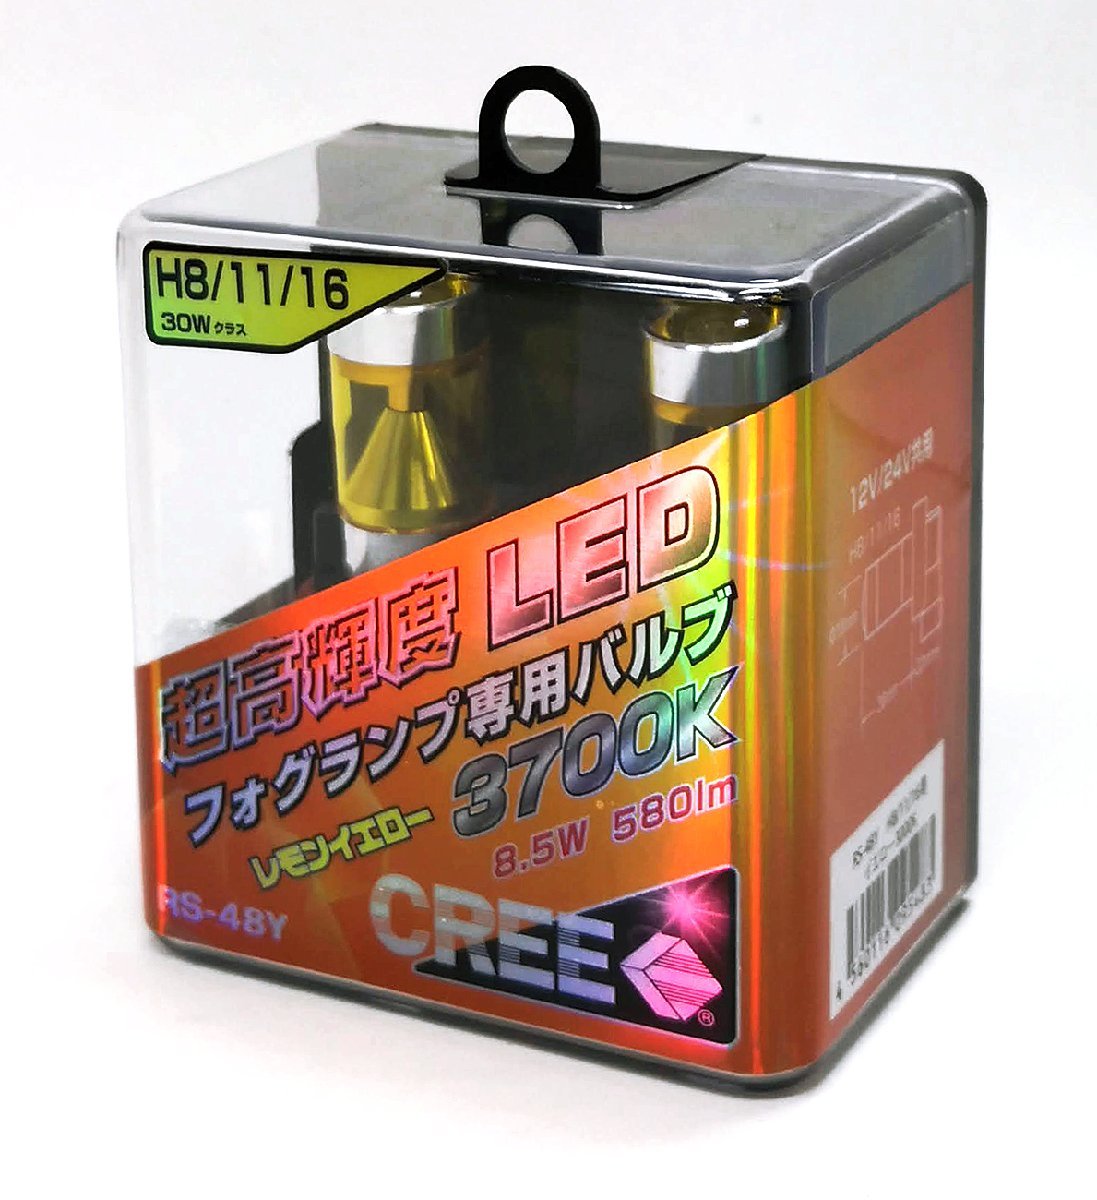 新品 WIN'Z CREE RS-48Y フォグランプ専用LEDバルブ レモンイエロー 3700K 8.5W 580lm H8/H11/H16 30Wクラス 12V/24V共用 ウインズ_画像1